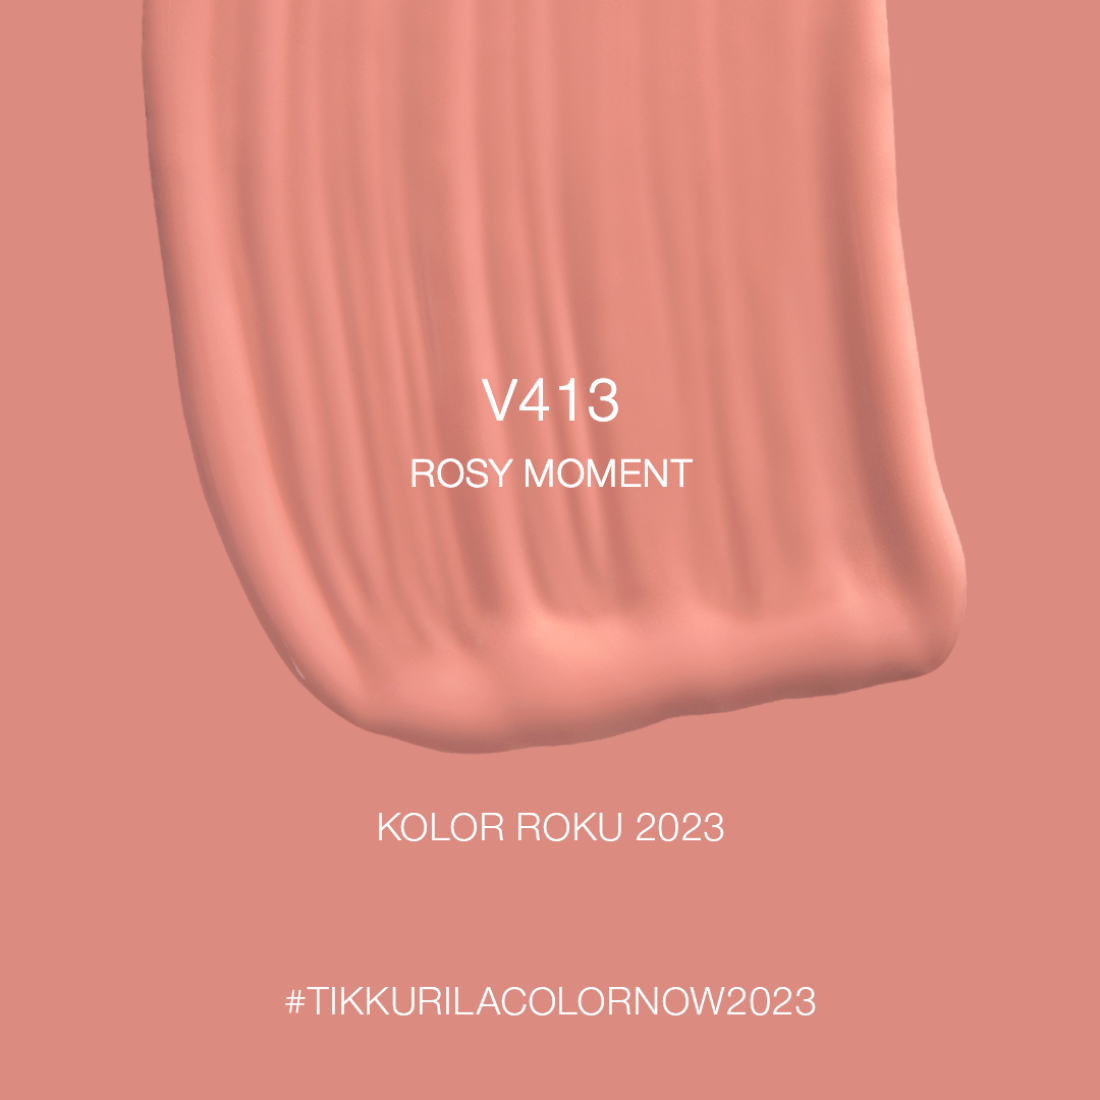 Tikkurila przedstawia V413 Rosy Moment - Kolor Roku 2023